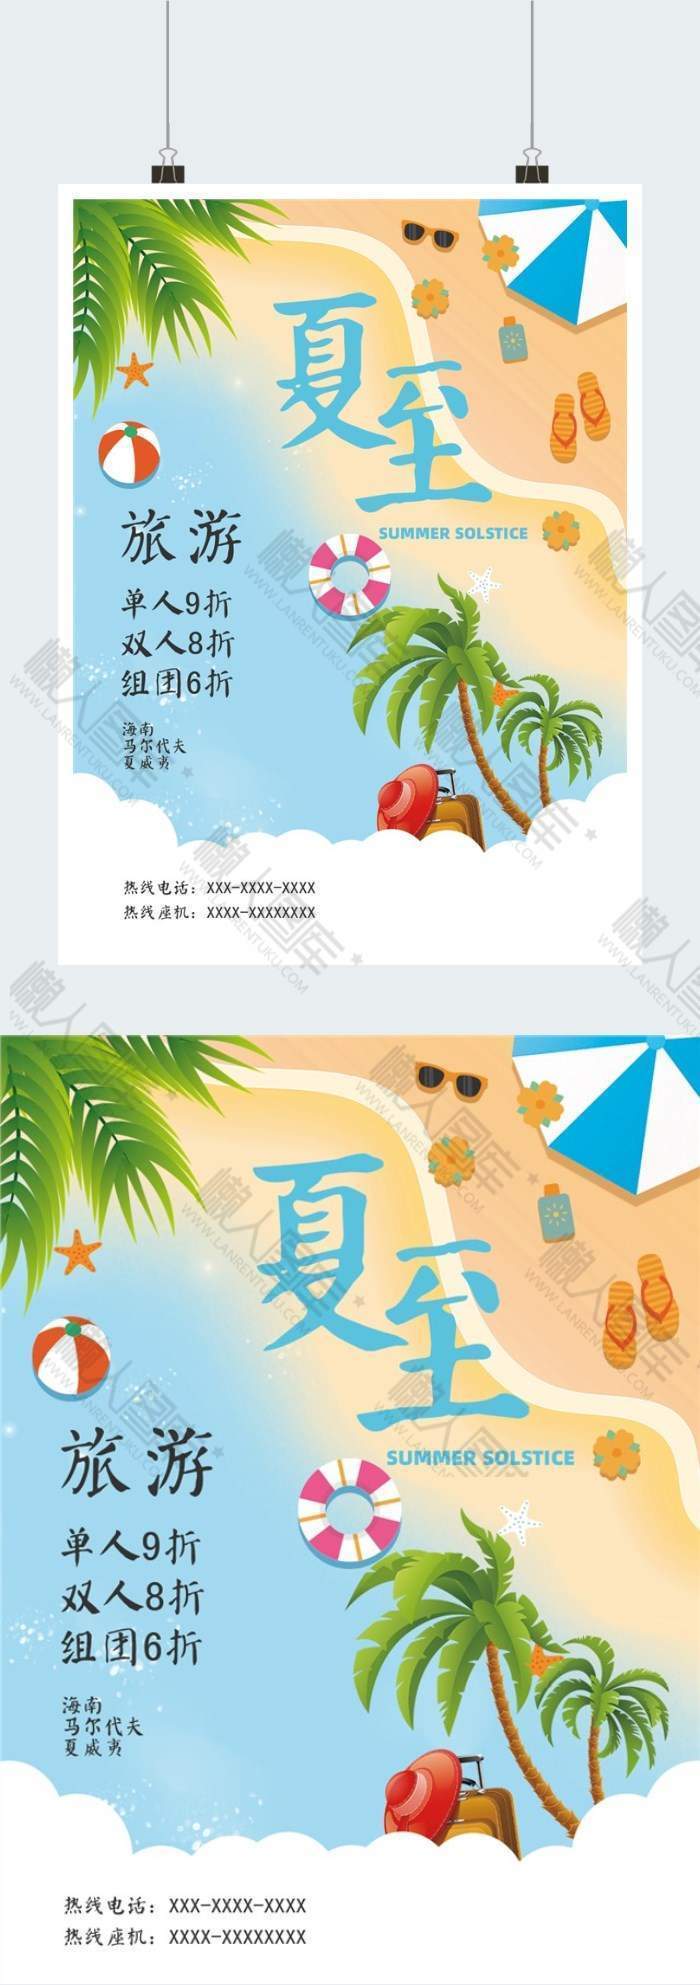 清新简约夏至旅游印刷海报